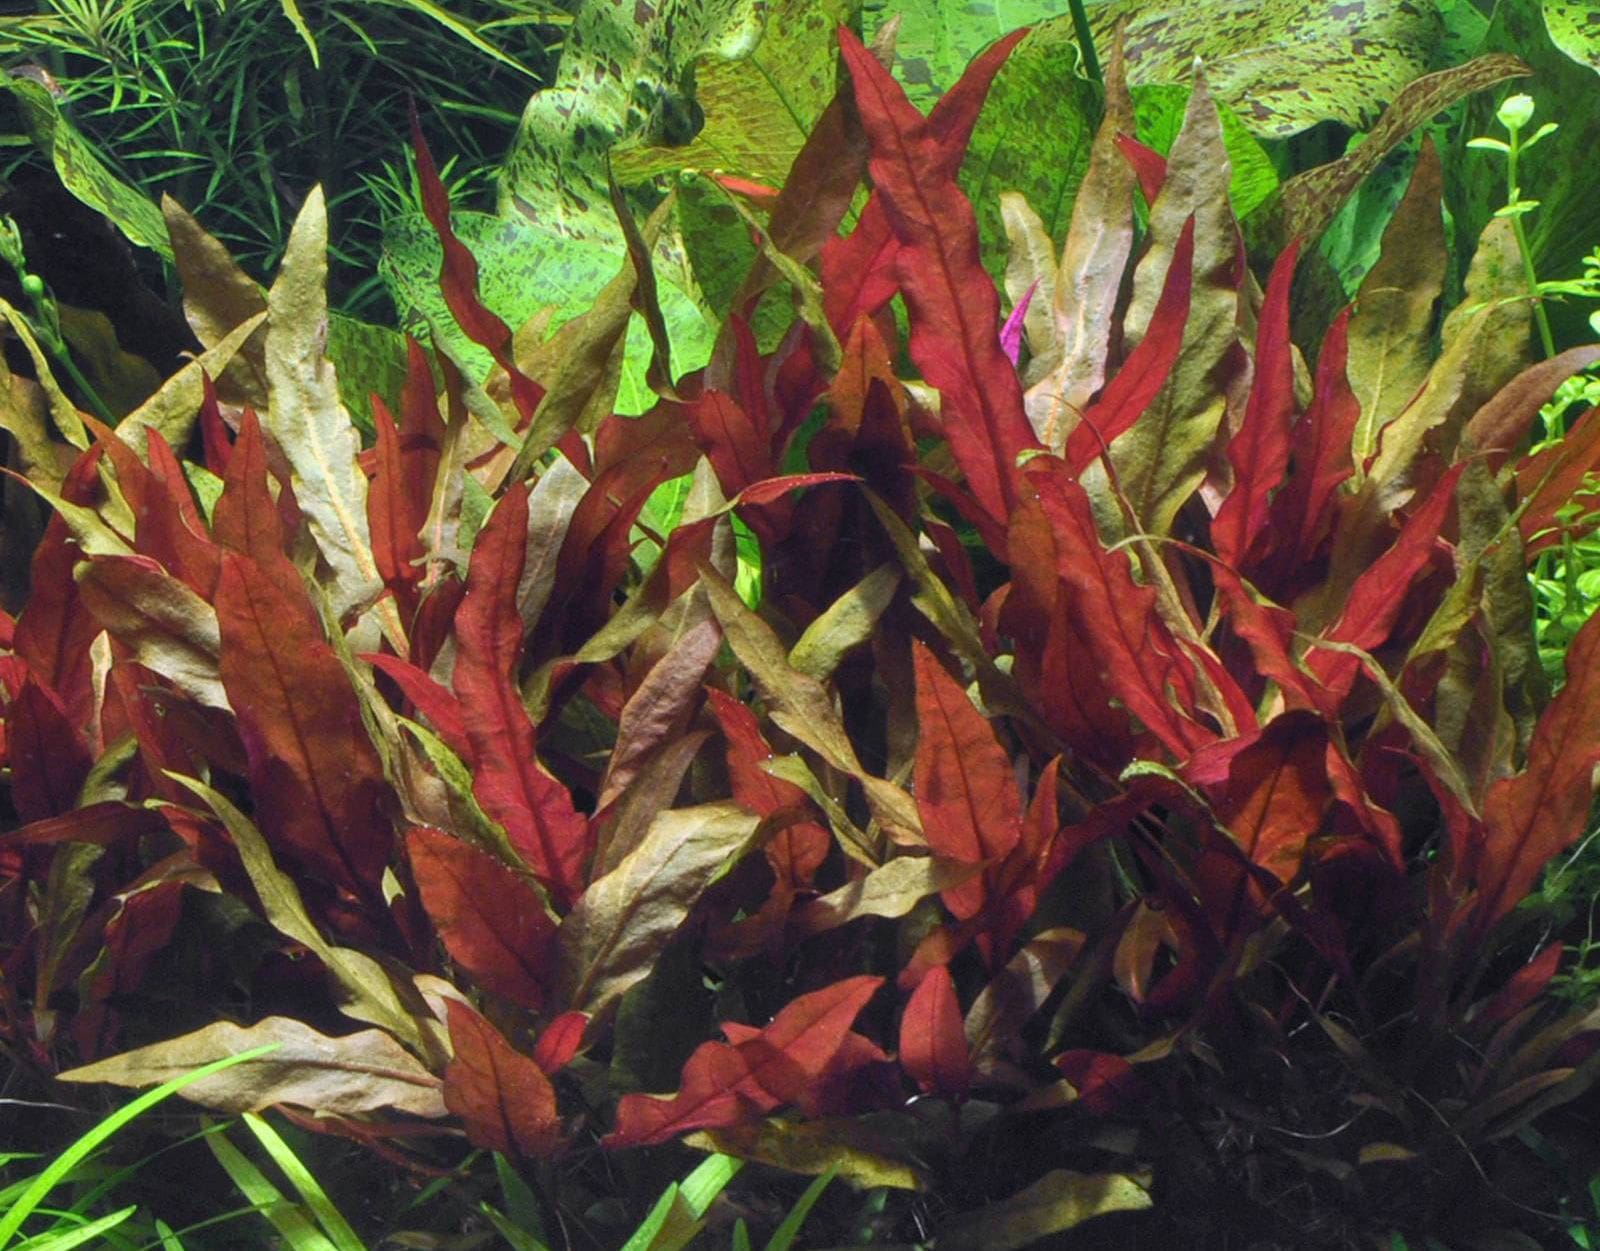 Аквариумные красные растения фото с названиями и описанием